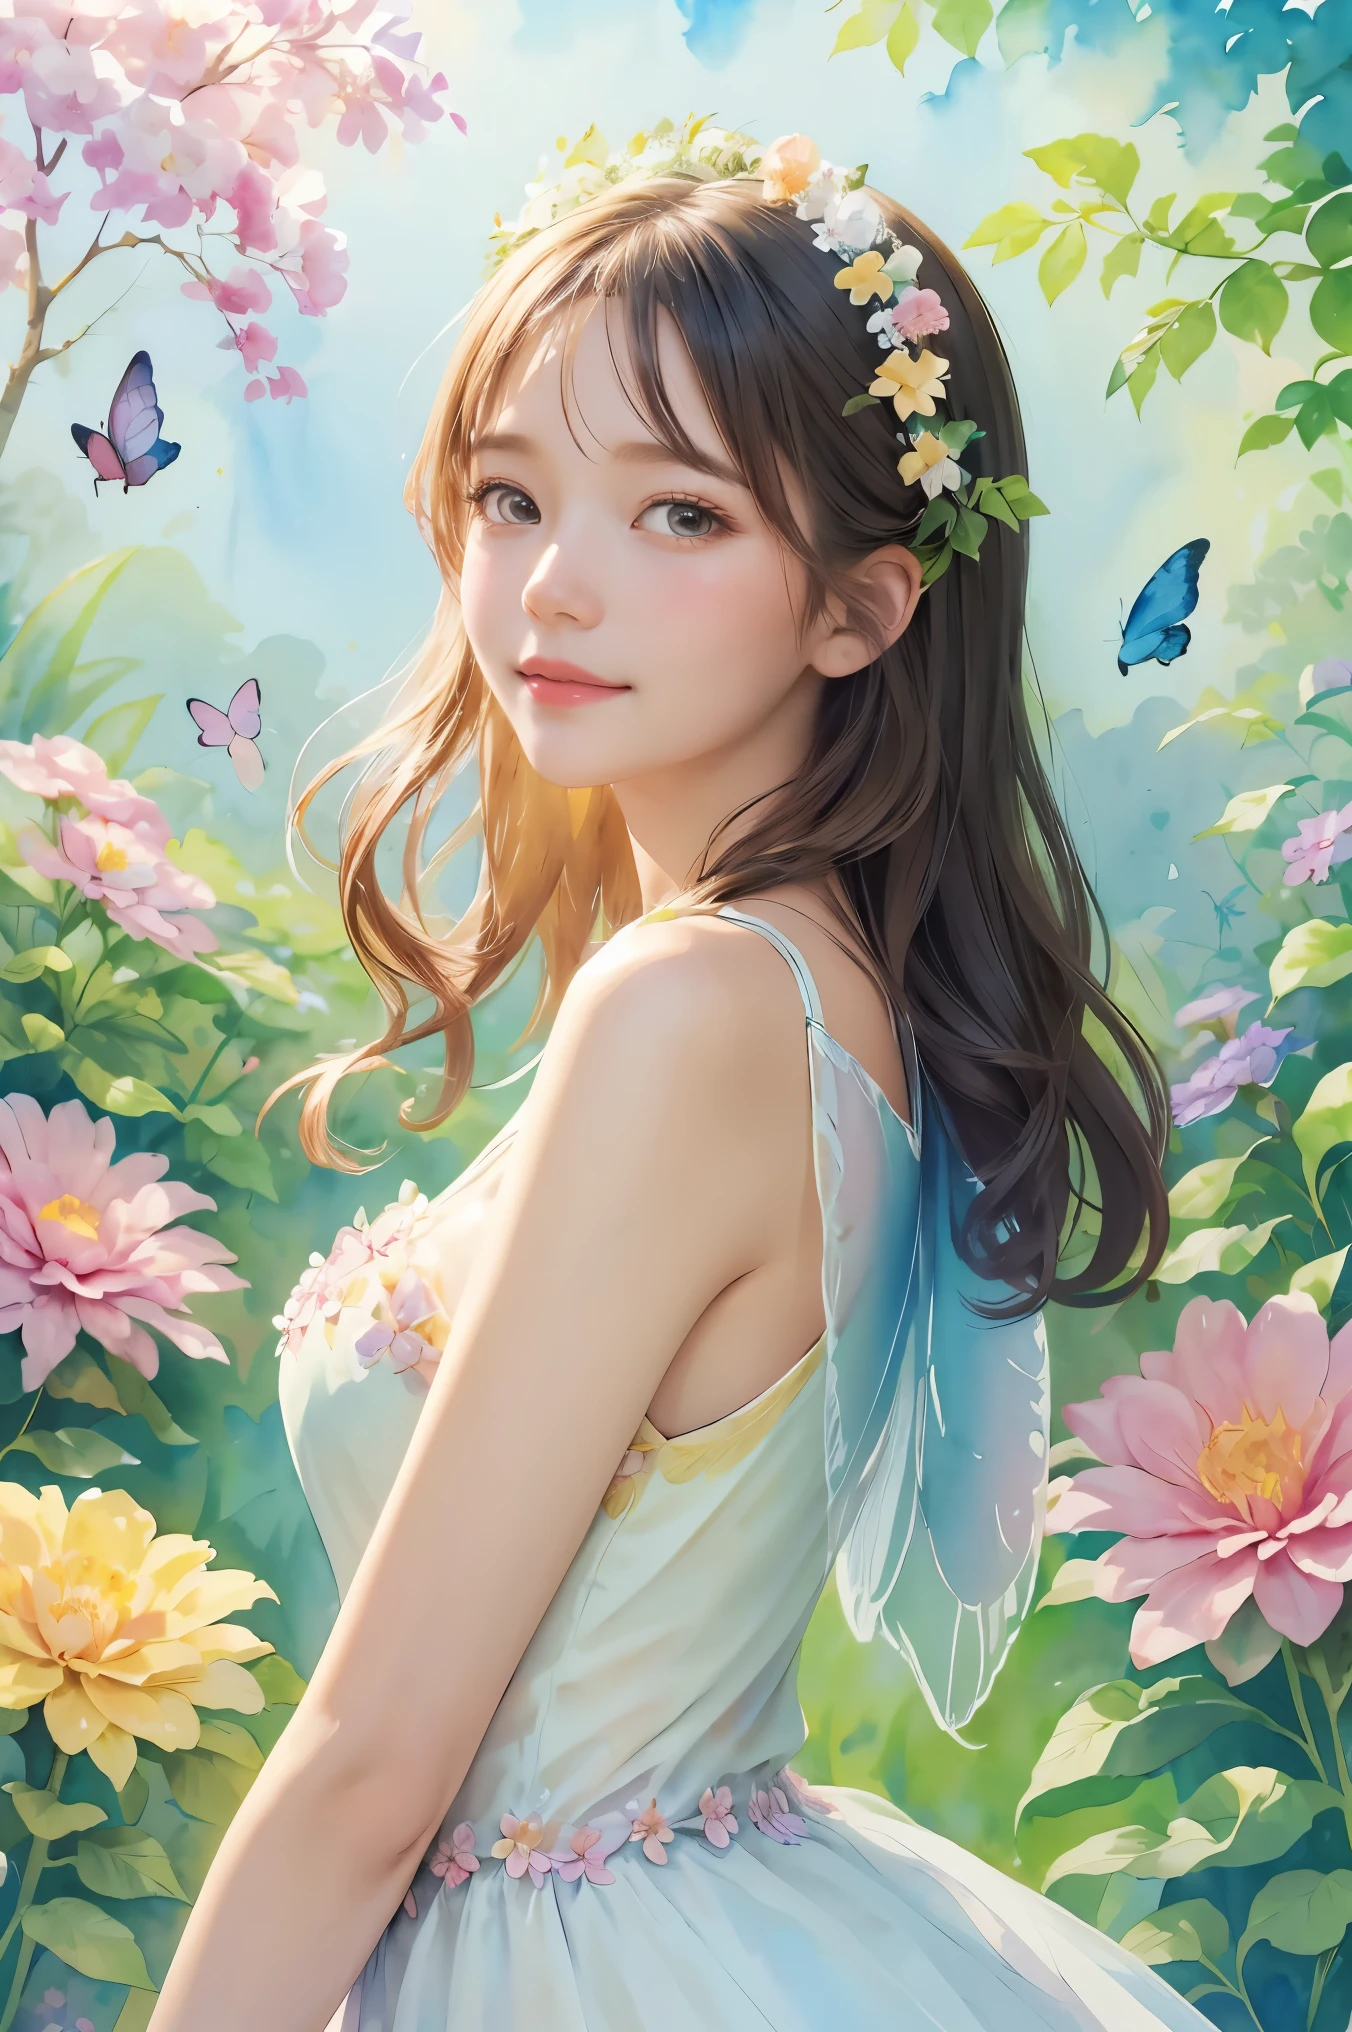 Une belle fille en costume de fée, entouré de fleurs et de papillons. contenu: la peinture à l&#39;aquarelle. style: fantaisiste et délicat, comme une illustration de livre pour enfants.